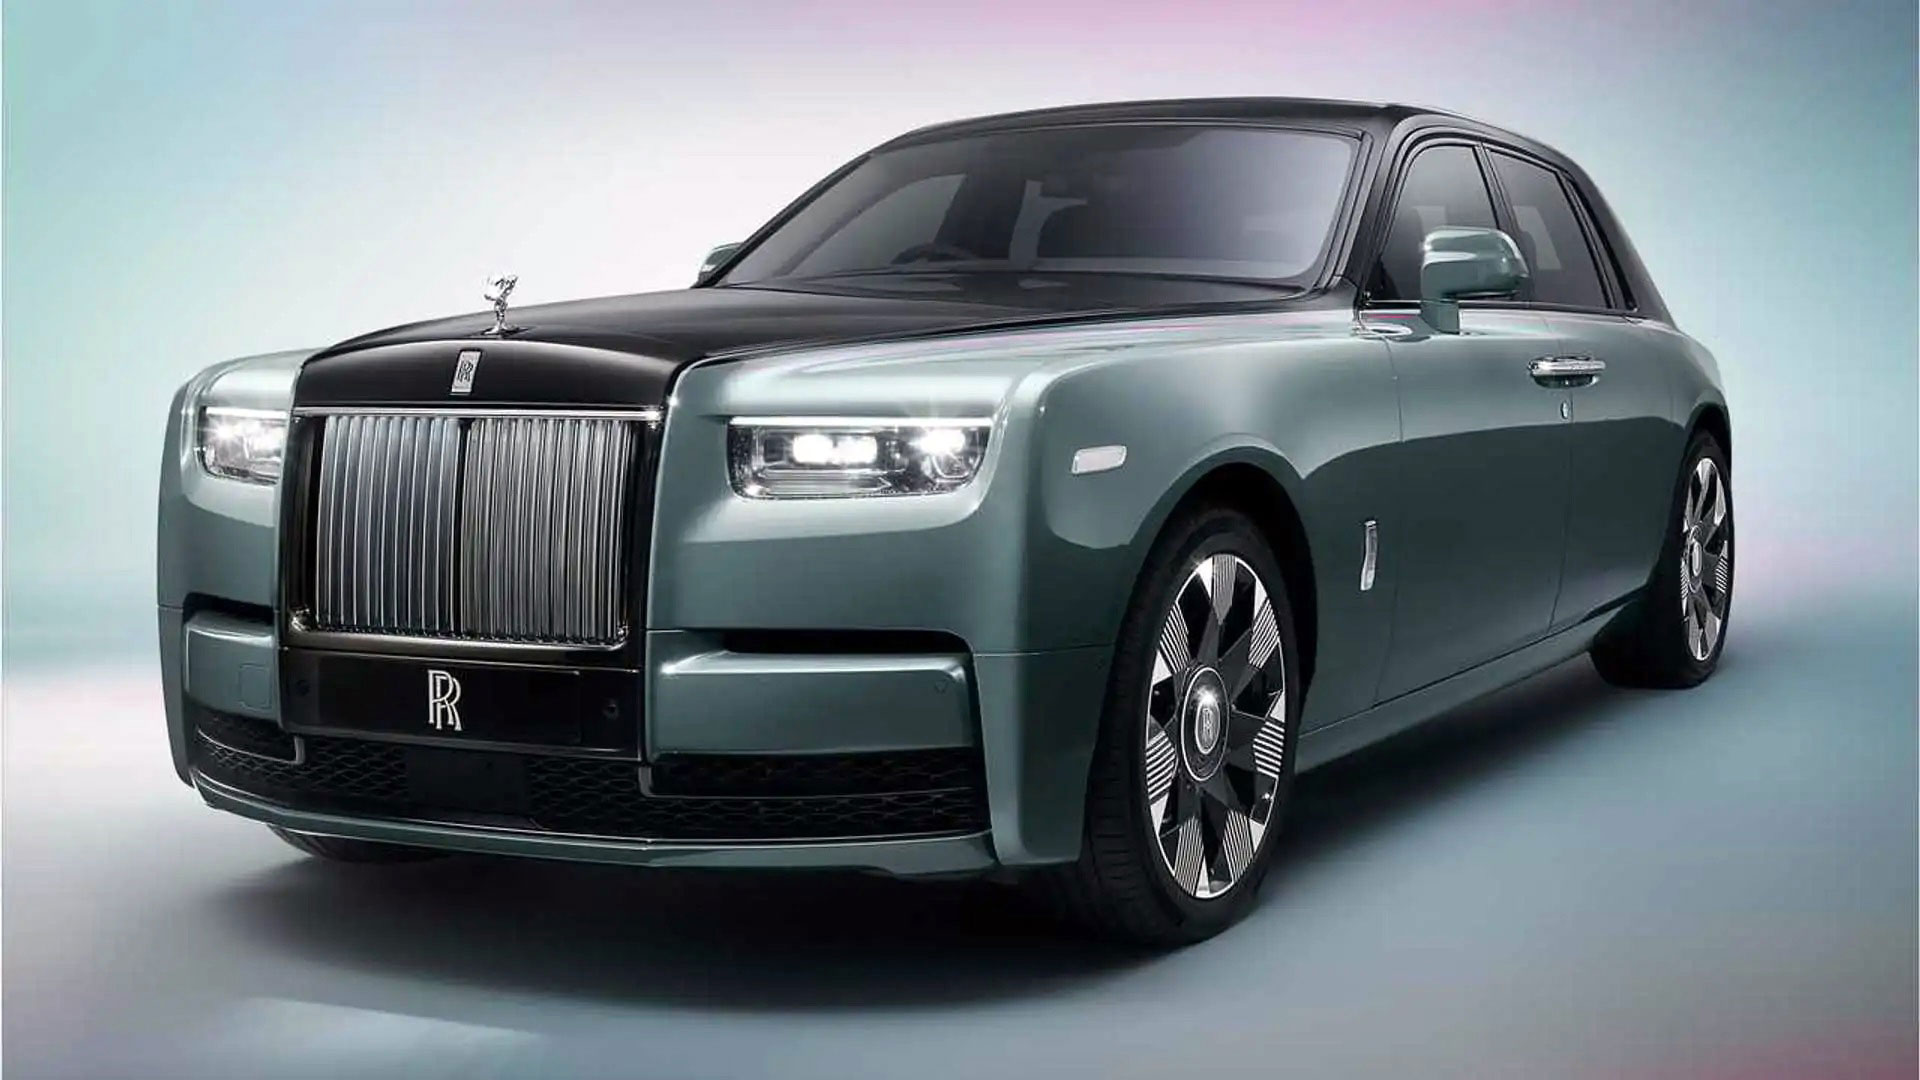 En la lista de los autos más caros no podía faltar un Rolls-Royce. El Phantom serie II es tan clásico como la marca y tan caro como siempre lo fue